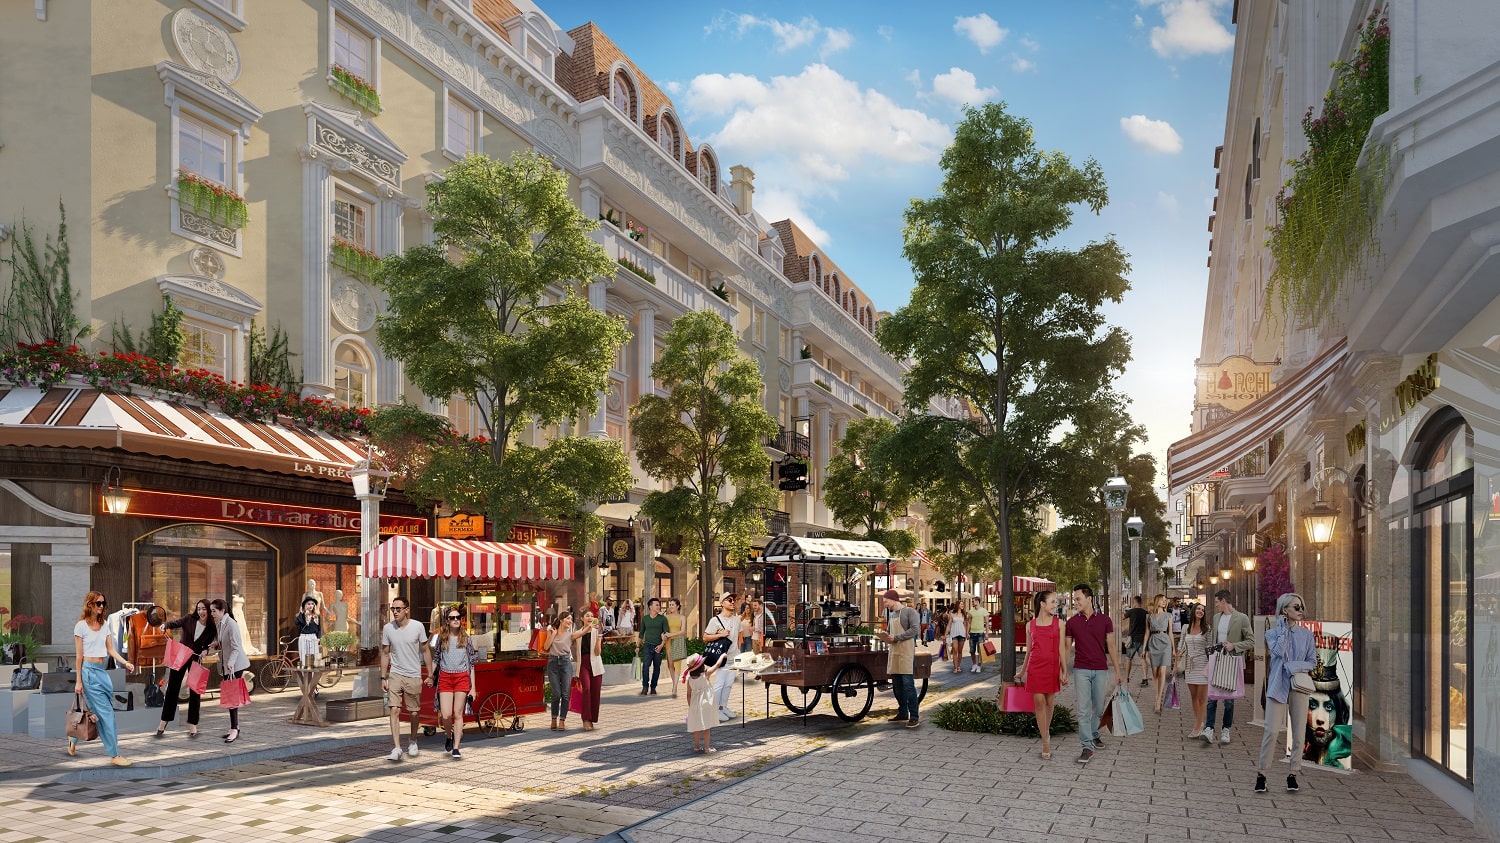 Tiểu khu Élyseé (Shophouse Europe) - dãy phố mua sắm đẳng cấp sắp hoàn thiện tại Hạ Long